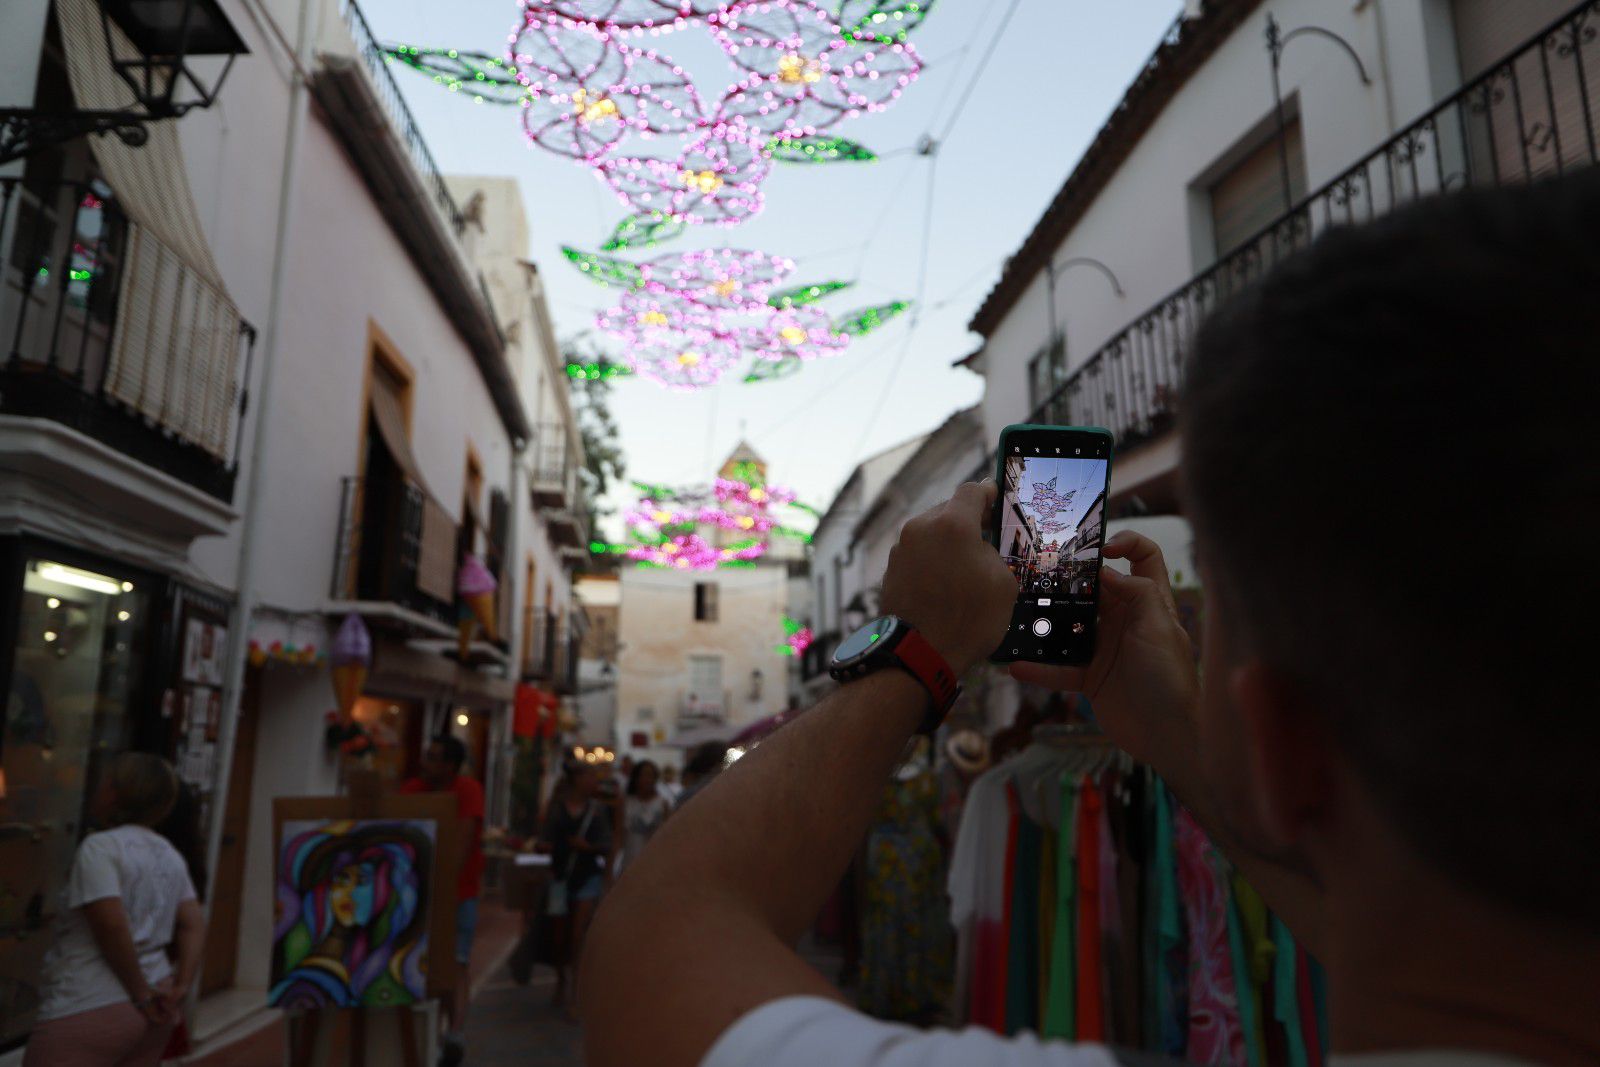 Marbella y San Pedro Alcántara suman nuevos atractivos turísticos durante el verano con una pionera iluminación ornamental en sus cascos antiguos